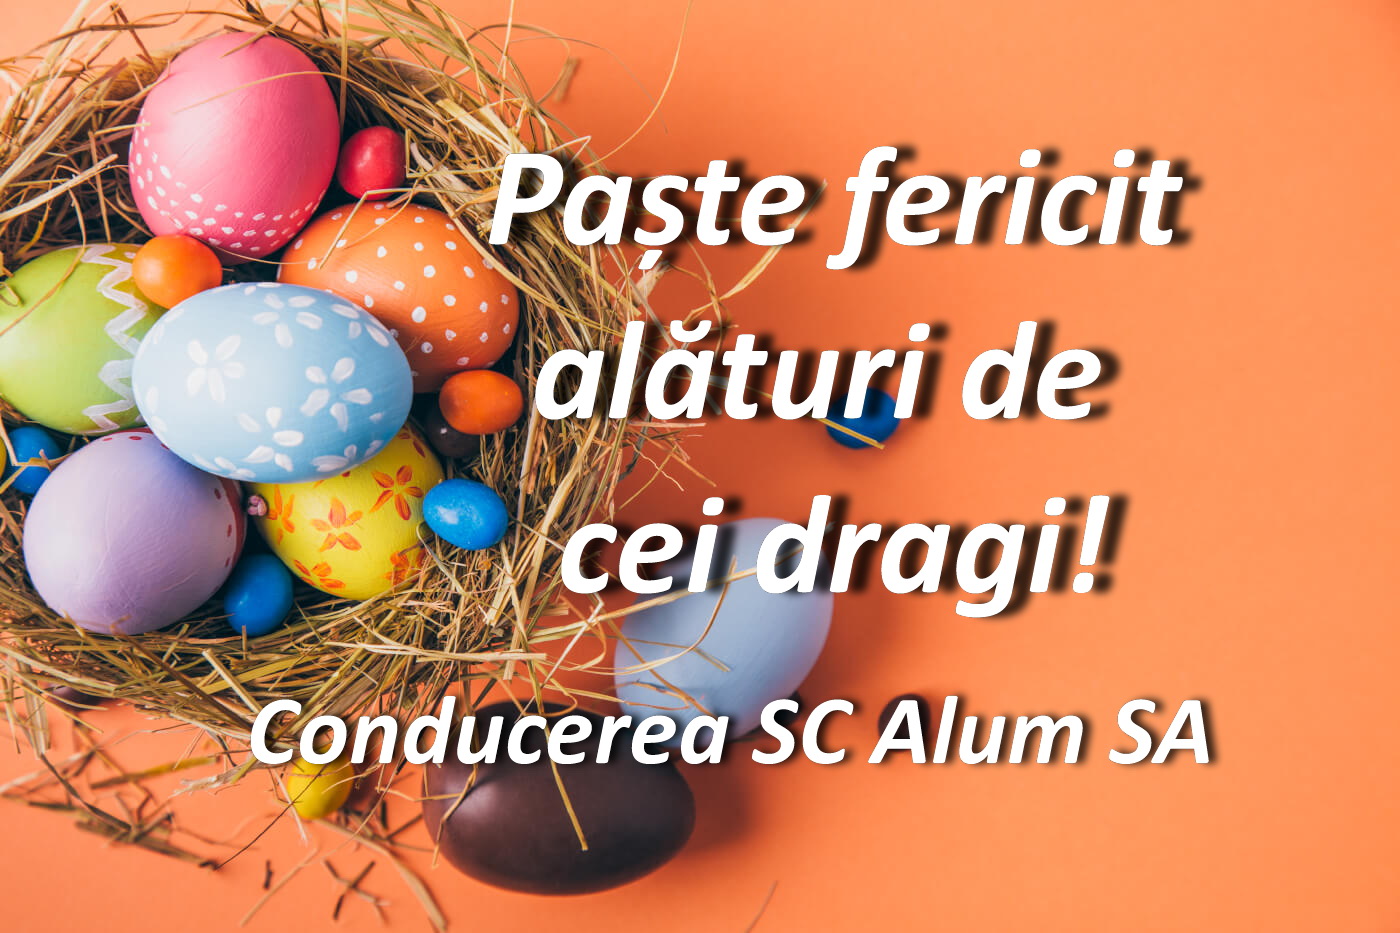 Conducerea SC Alum SA vă urează Paște fericit!